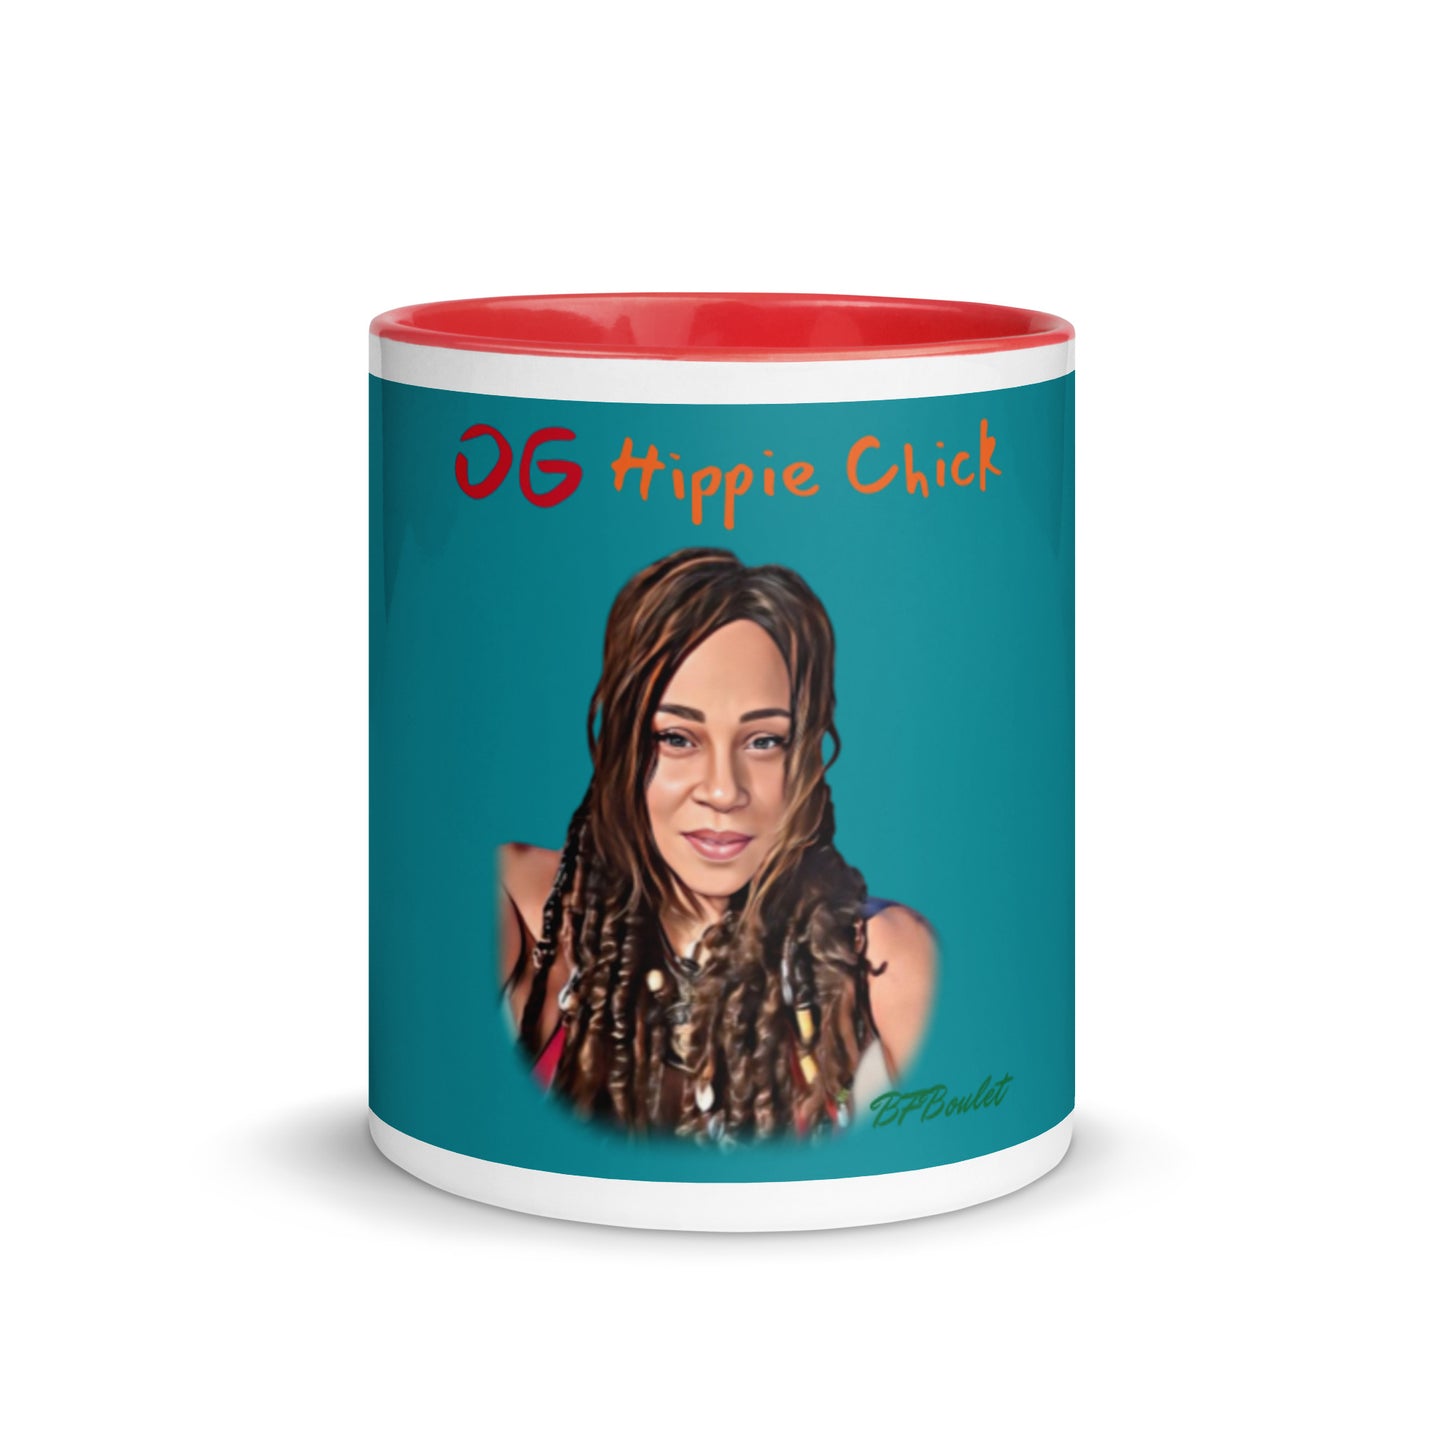 Teal Color Mug - OG Hippie Chick (BFBoulet)